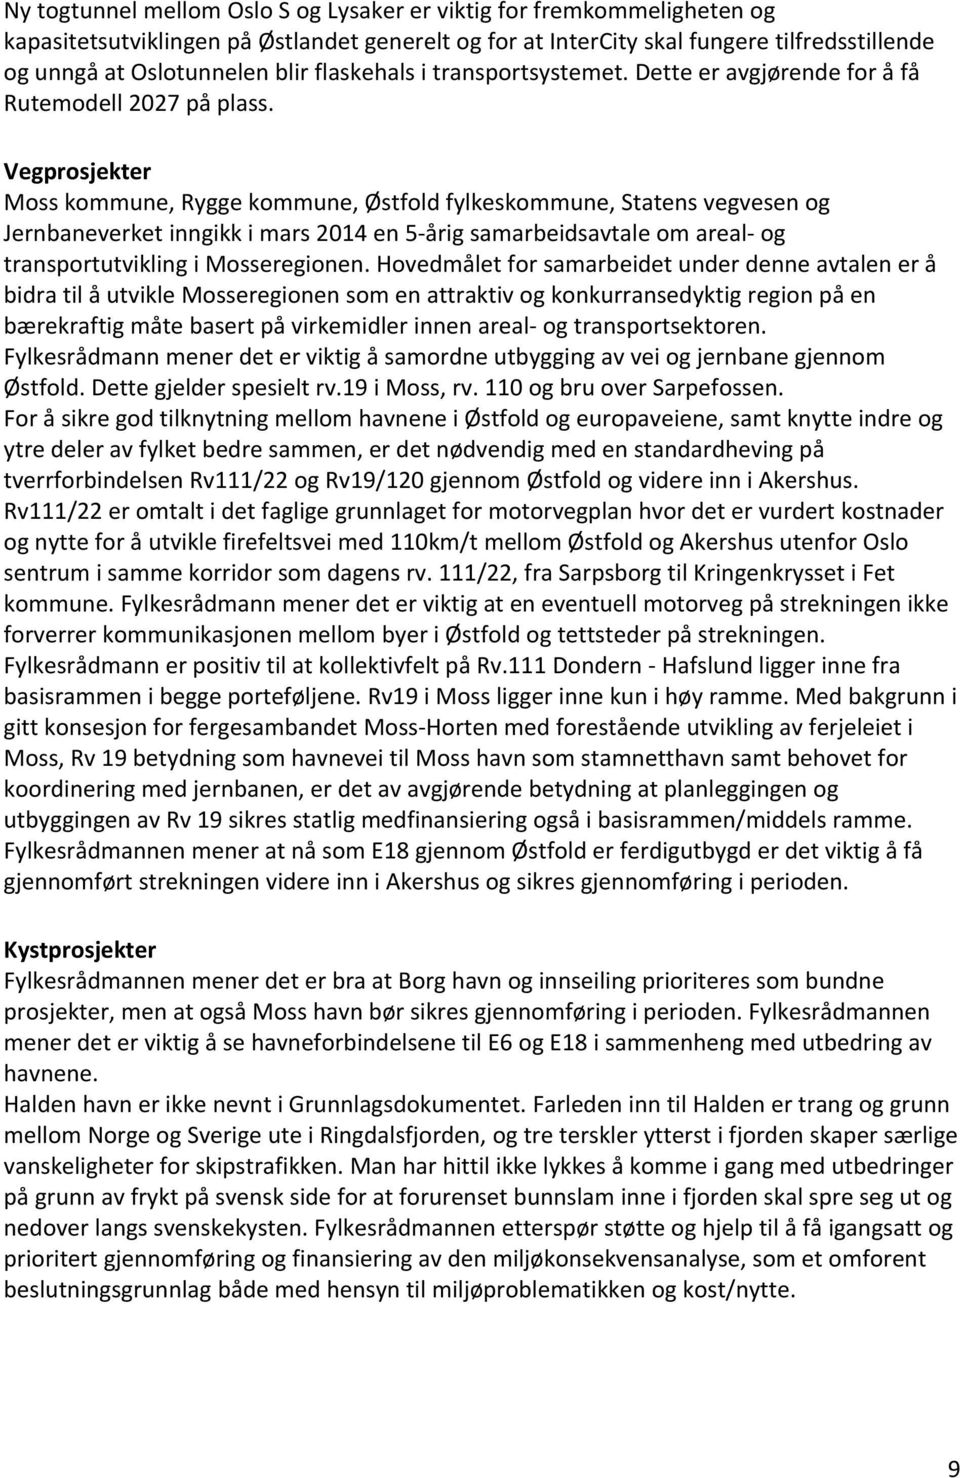 Vegprosjekter Moss kommune, Rygge kommune, Østfold fylkeskommune, Statens vegvesen og Jernbaneverket inngikk i mars 2014 en 5-årig samarbeidsavtale om areal- og transportutvikling i Mosseregionen.